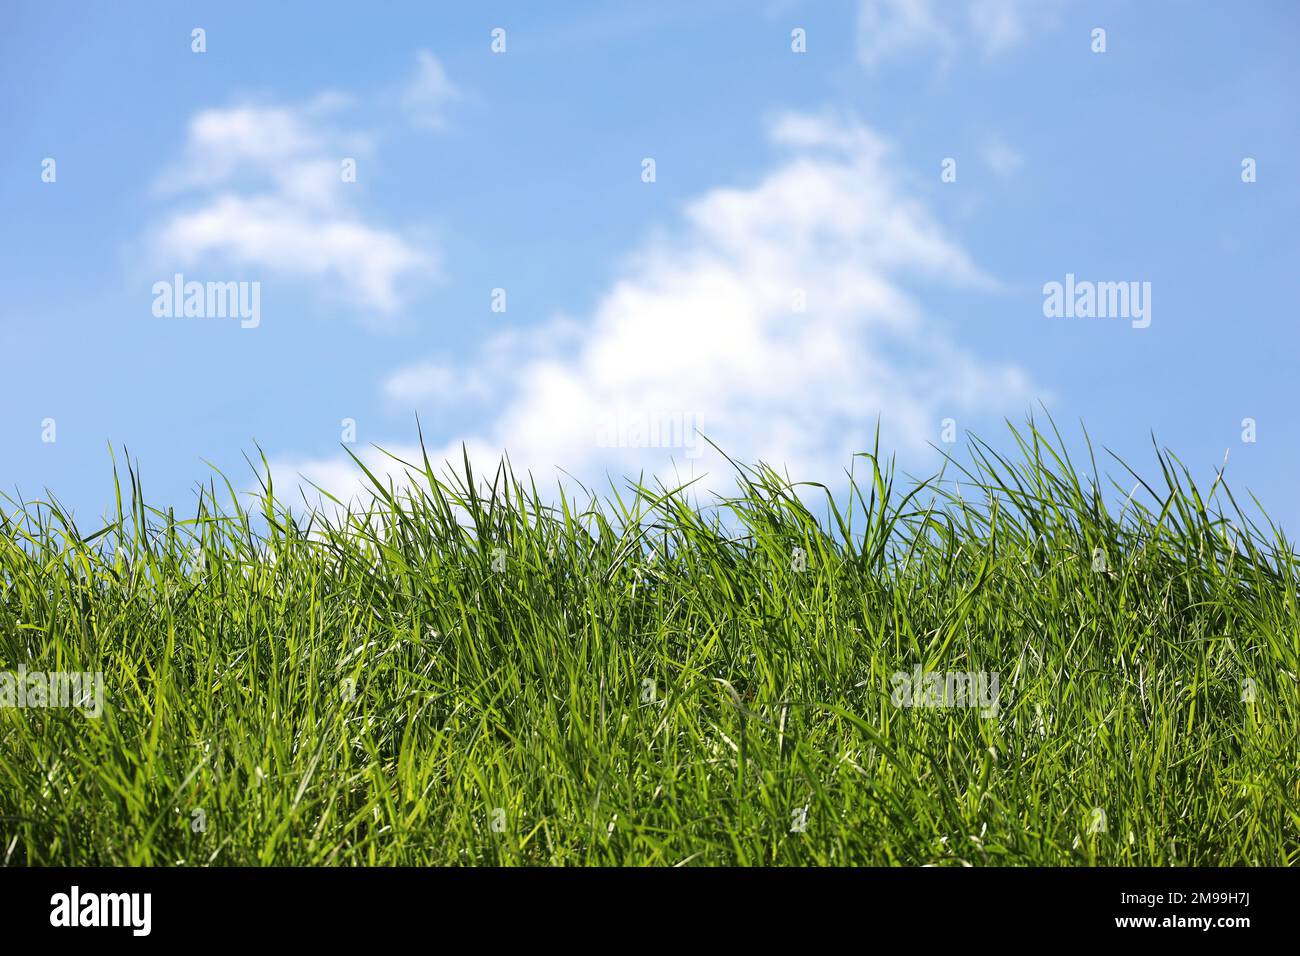 Frisches grünes Gras auf blauem Himmel und weißen Wolken. Grüne Natur, Ökologiekonzept Stockfoto